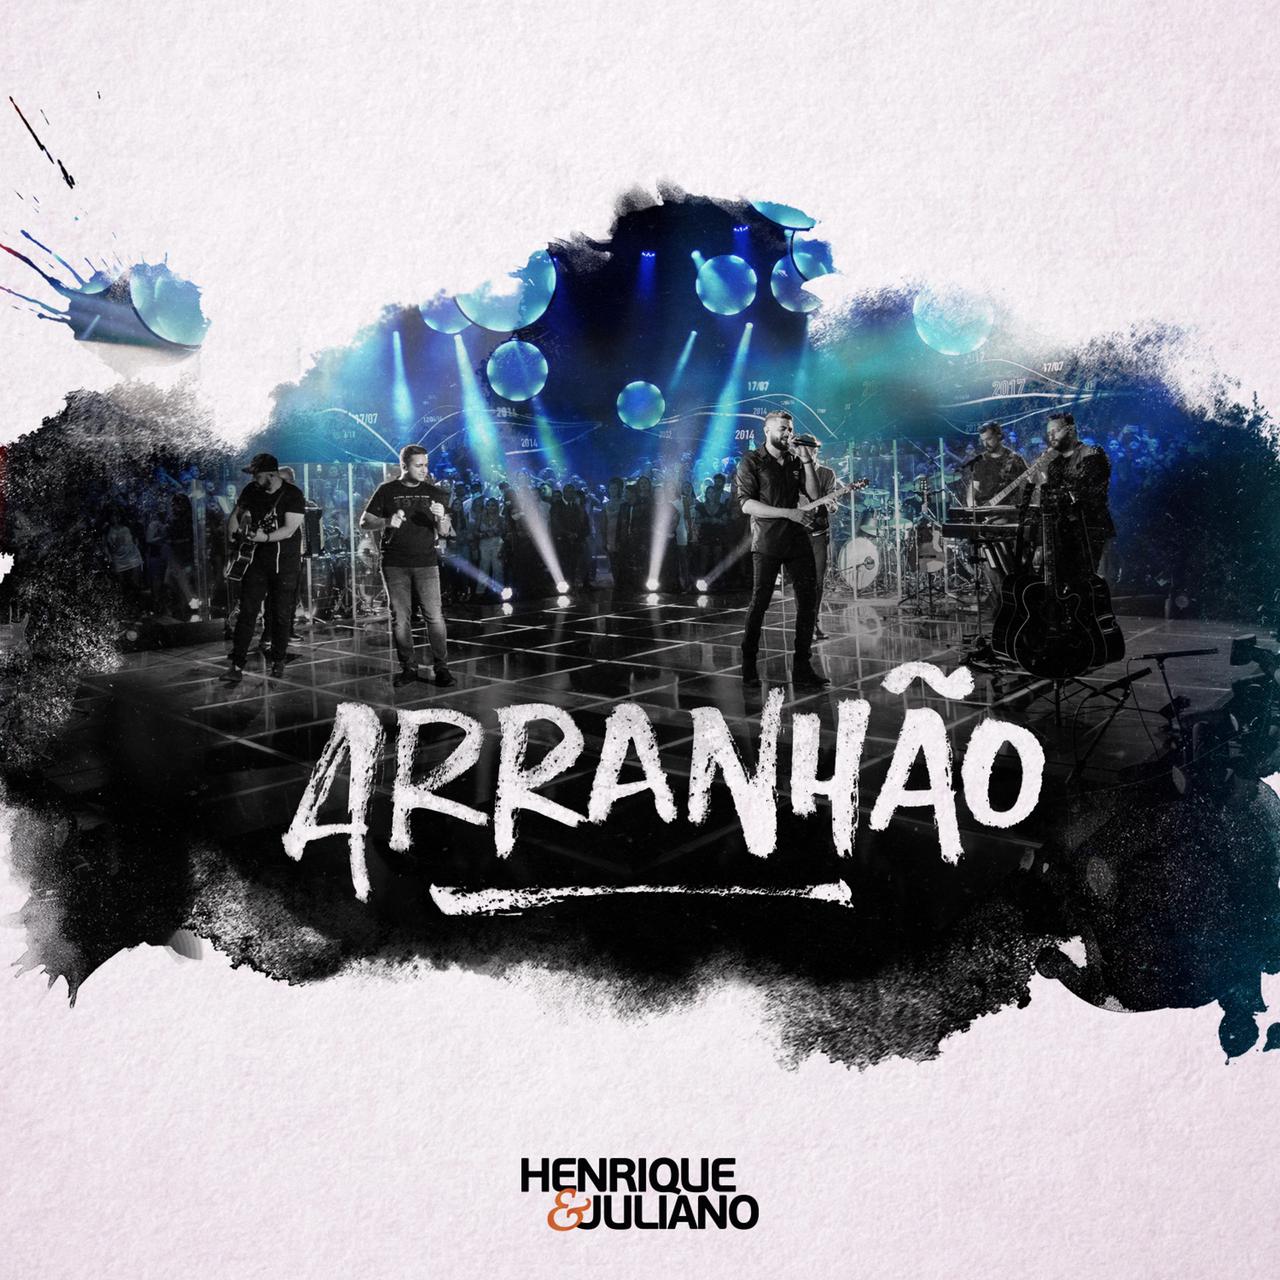 Dupla Henrique & Juliano cresce 72% em streams na Deezer  após o lançamento da música "Arranhão" 42